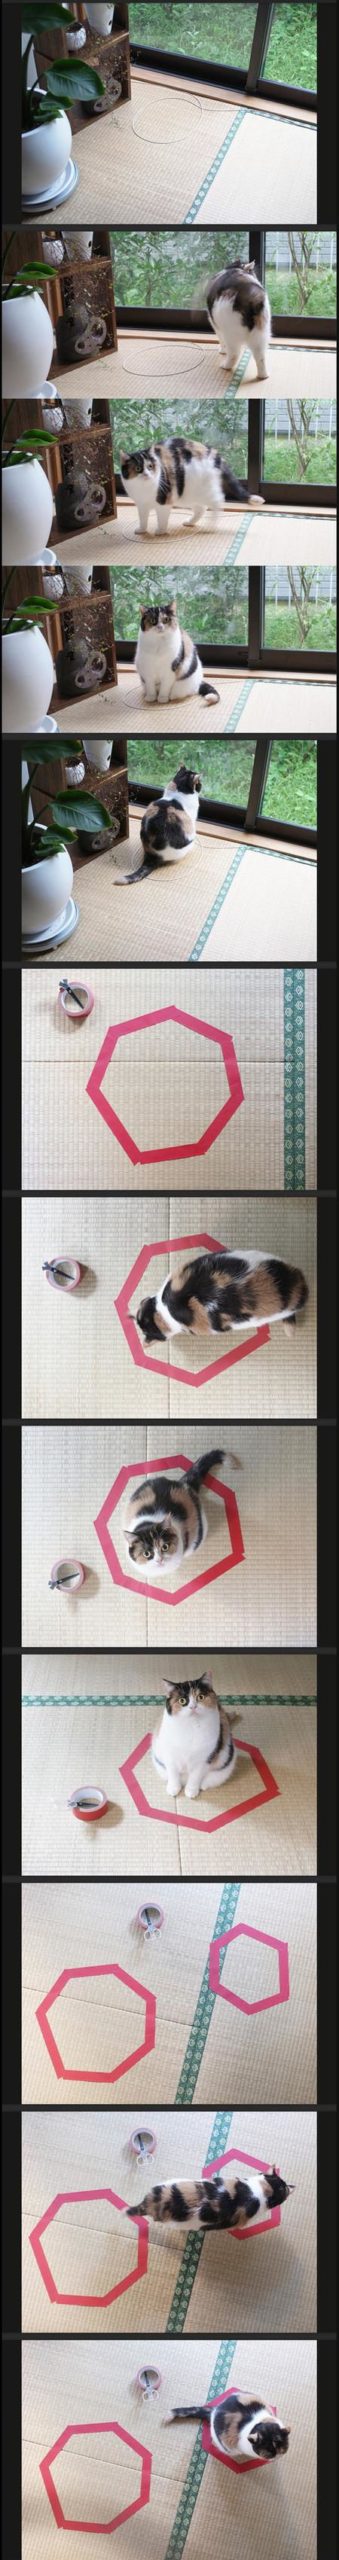 Cats+like+circles.